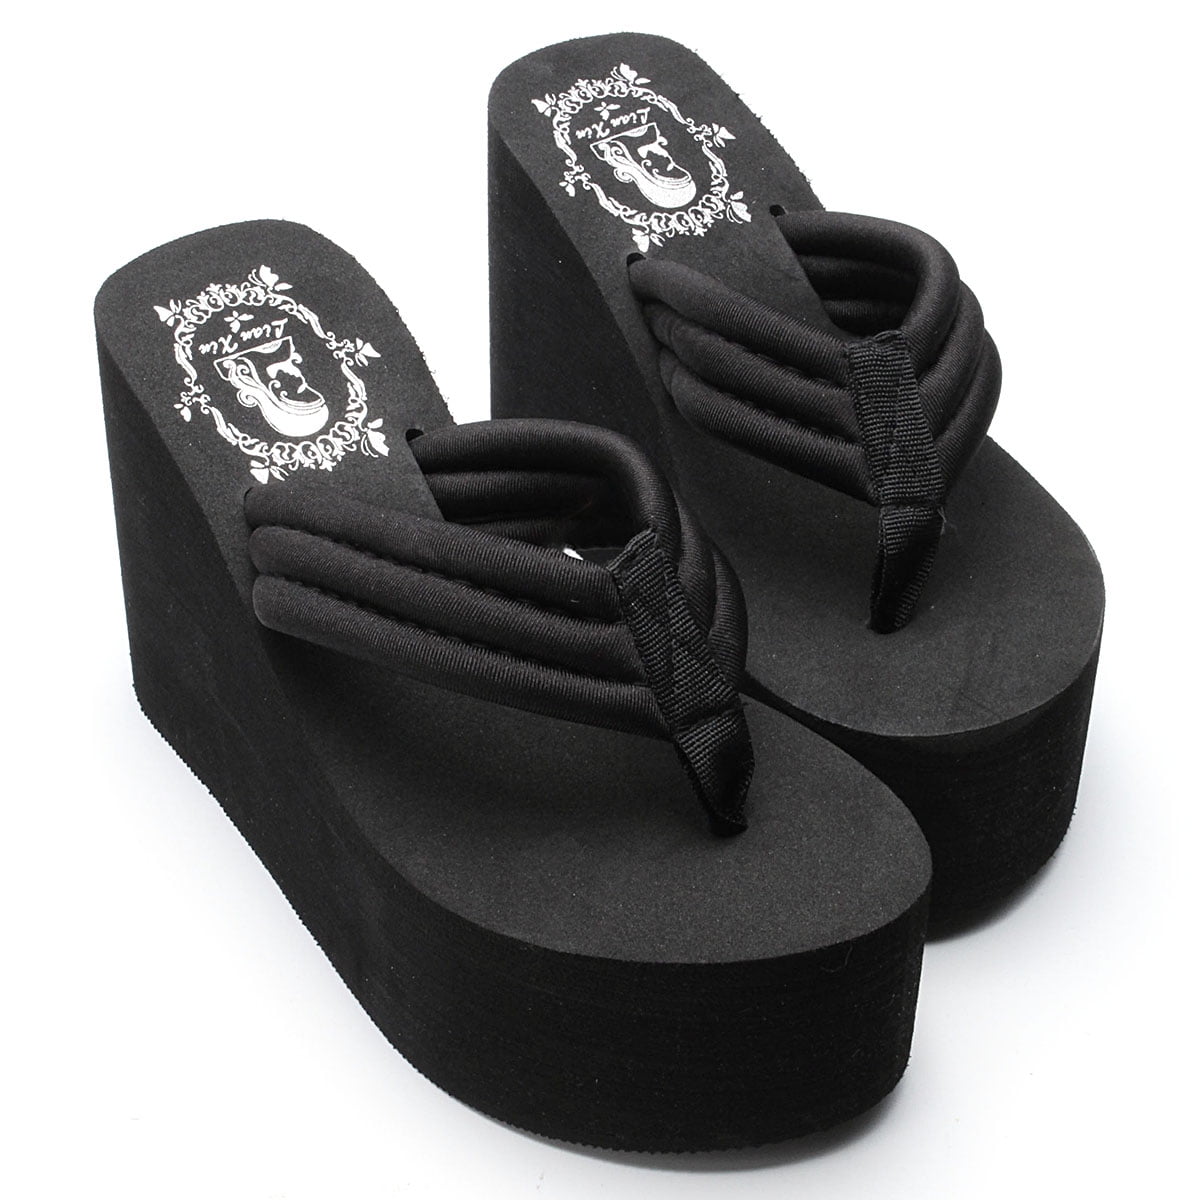 black high heel flip flops